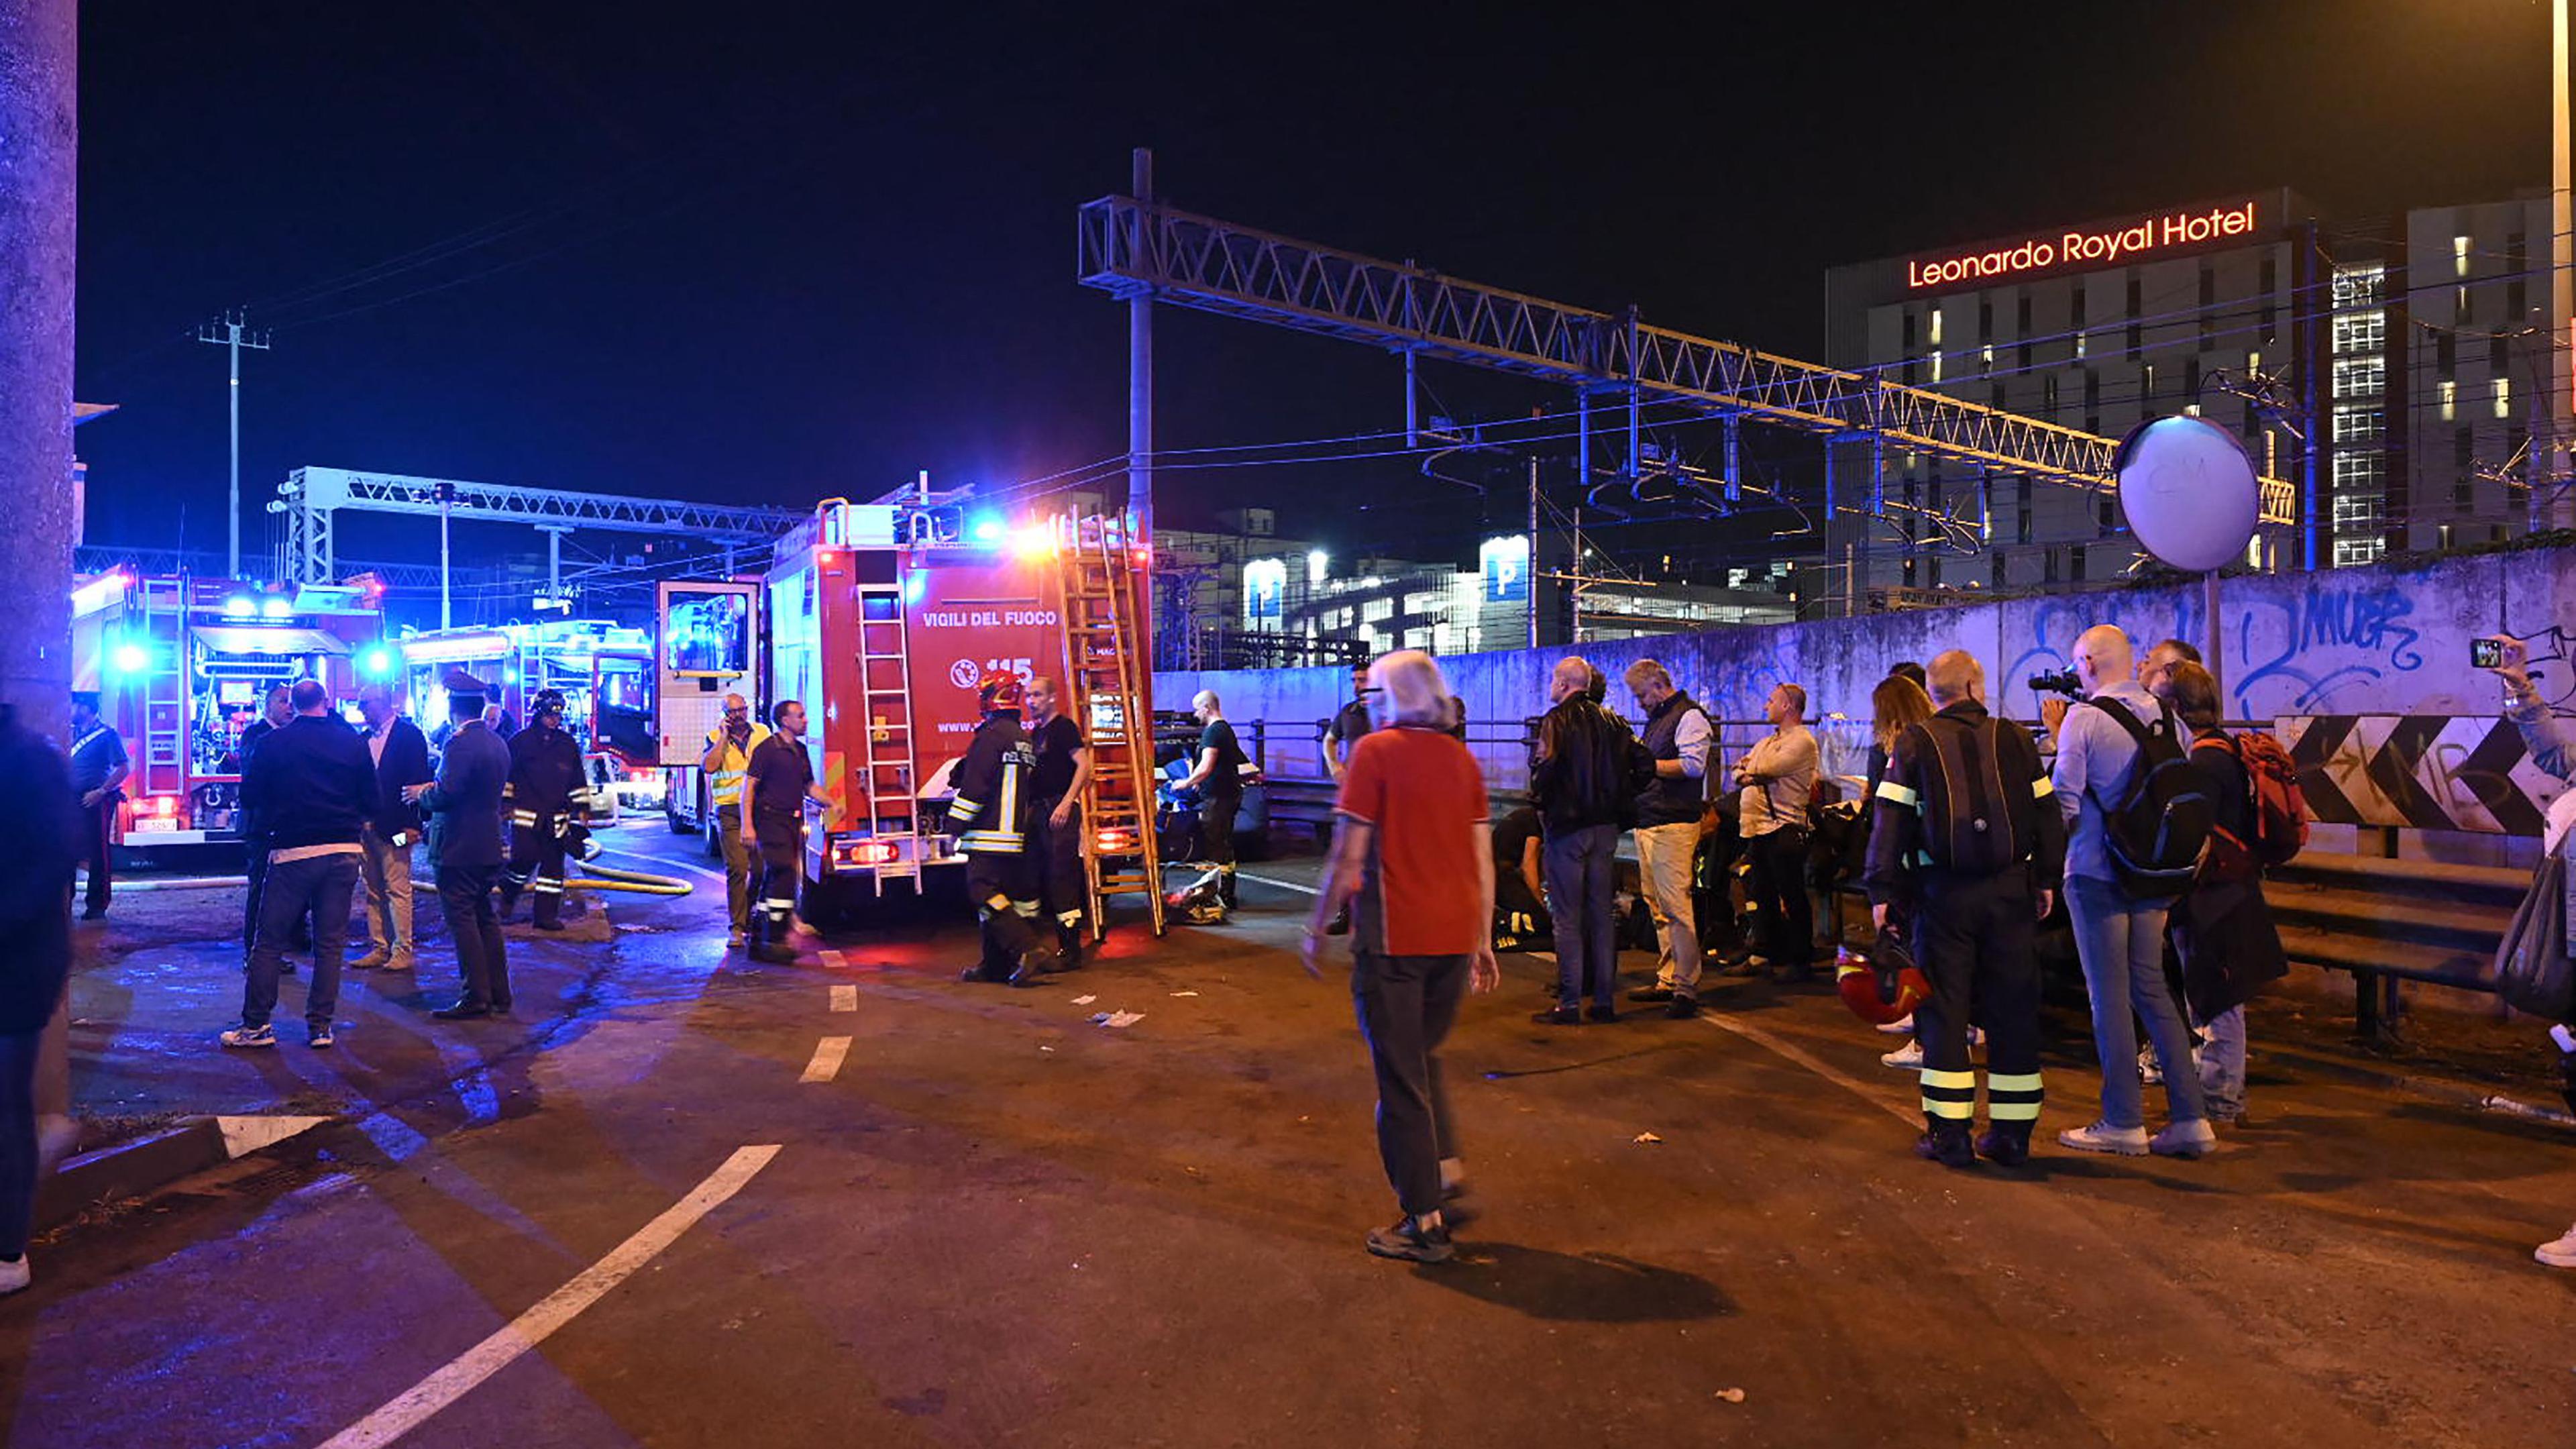 Dois portugueses entre os mortos em acidente de autocarro em Veneza